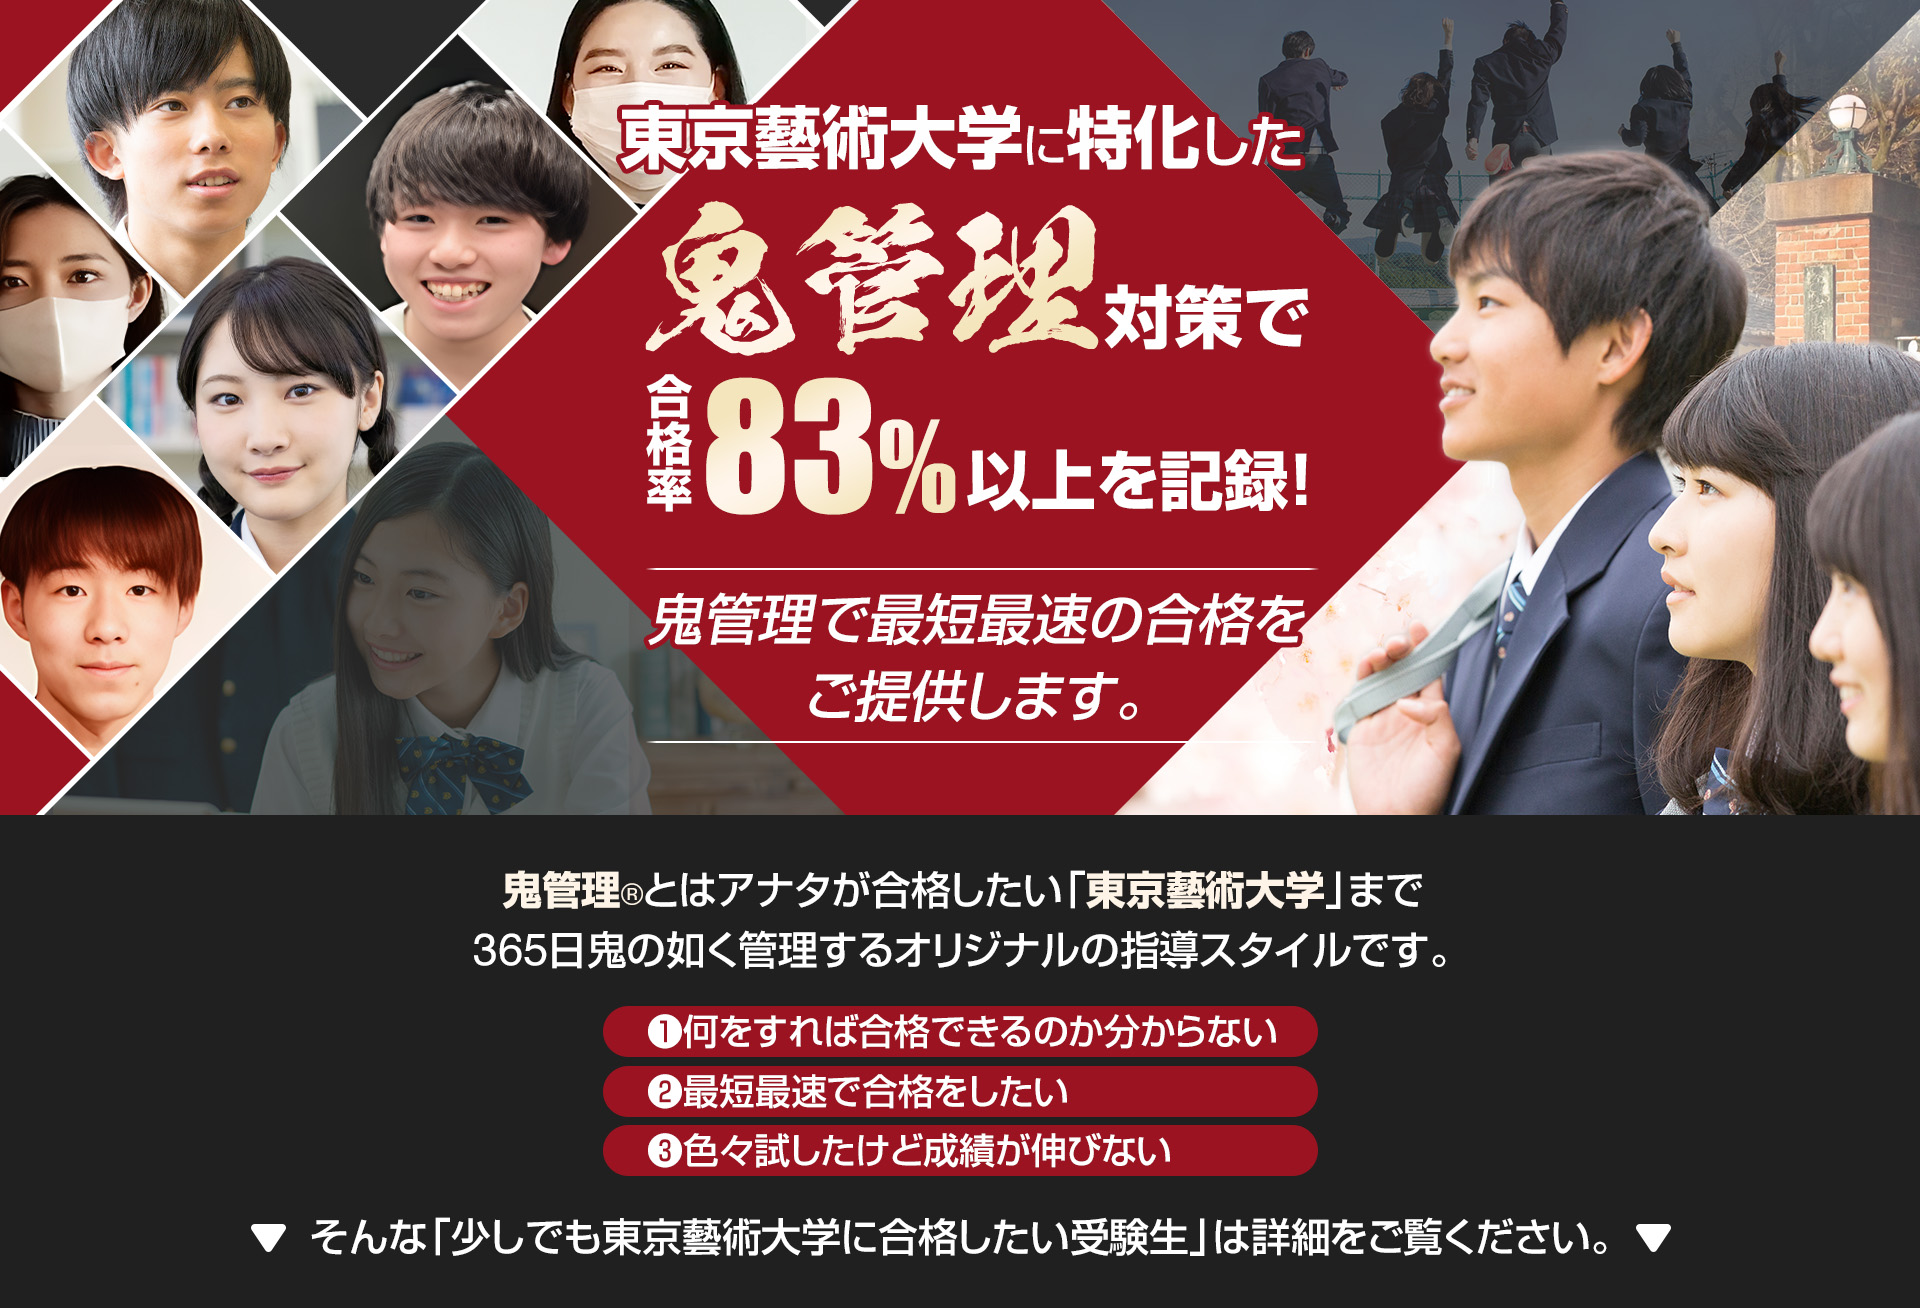 東京藝術大学に特化した鬼管理対策で合格率83％以上を記録。鬼管理でアナタが合格したい東京藝術大学への最短最速の合格を提供します。